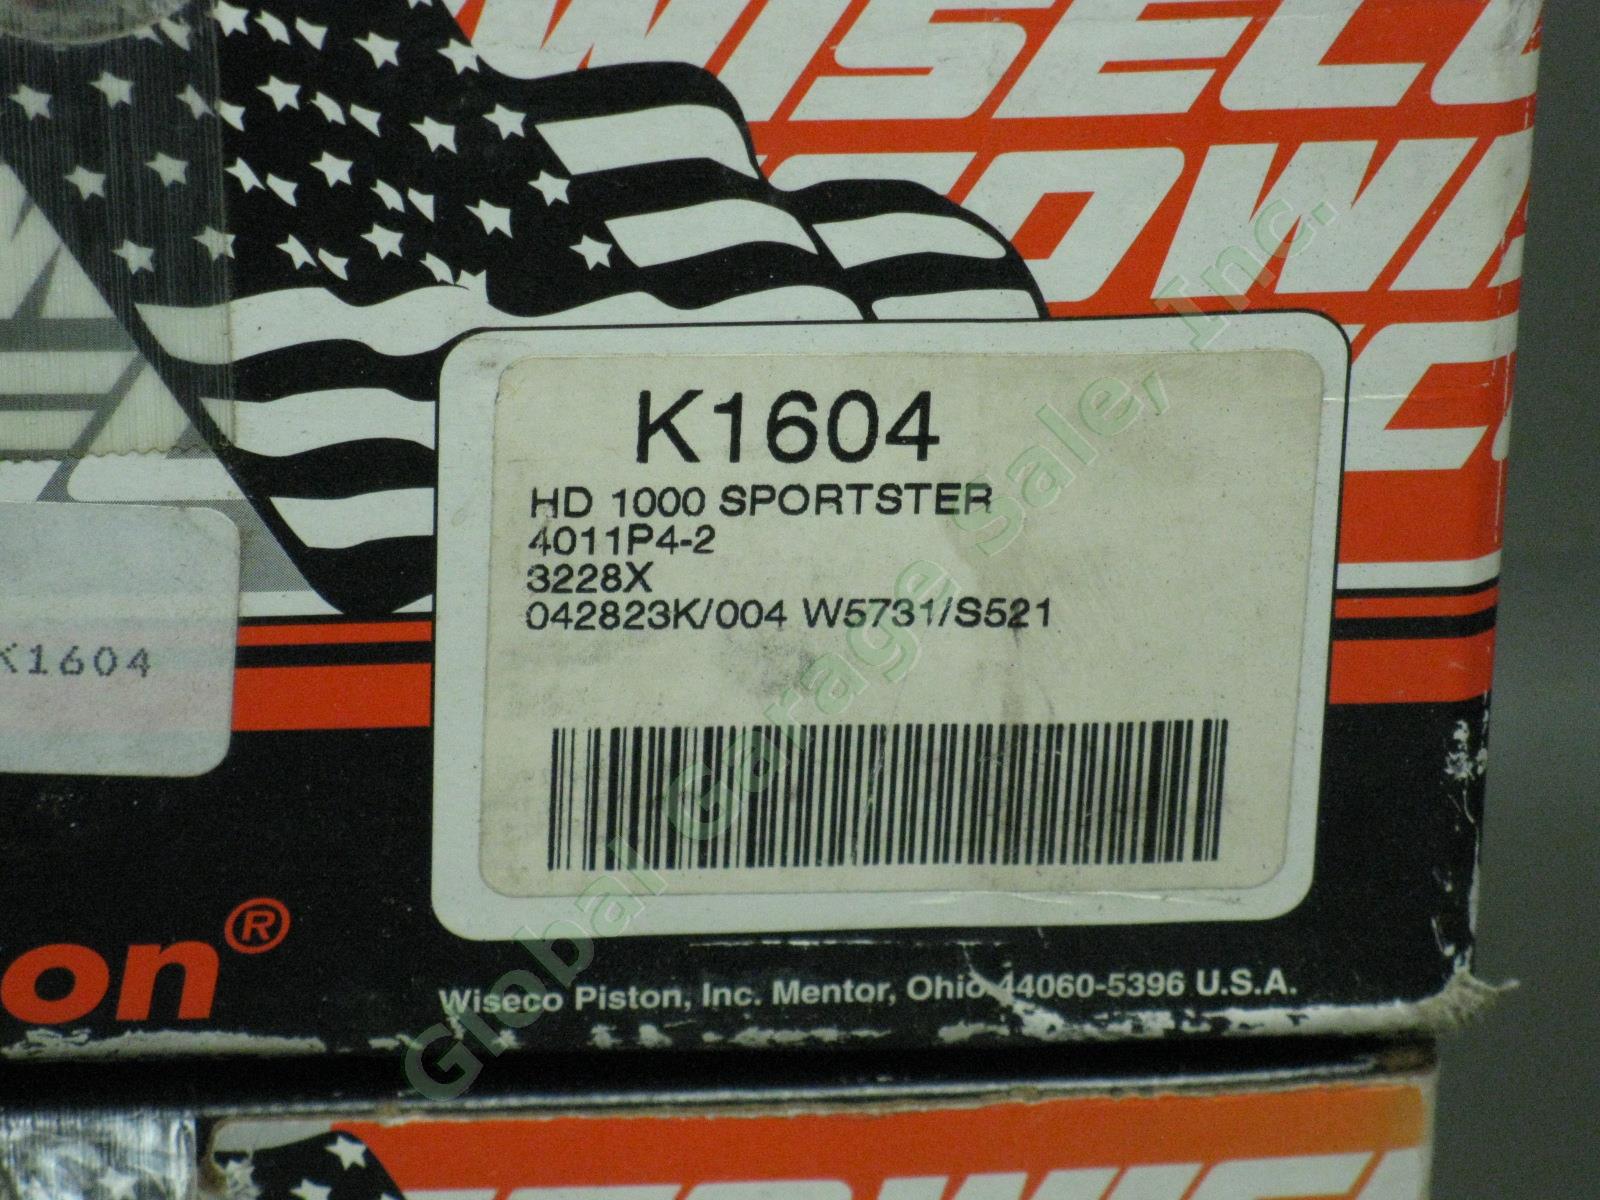 NOS Vtg Wiseco Screaming Eagle Harley Davidson Piston Camshaft Lot K1604 K1655 + 2